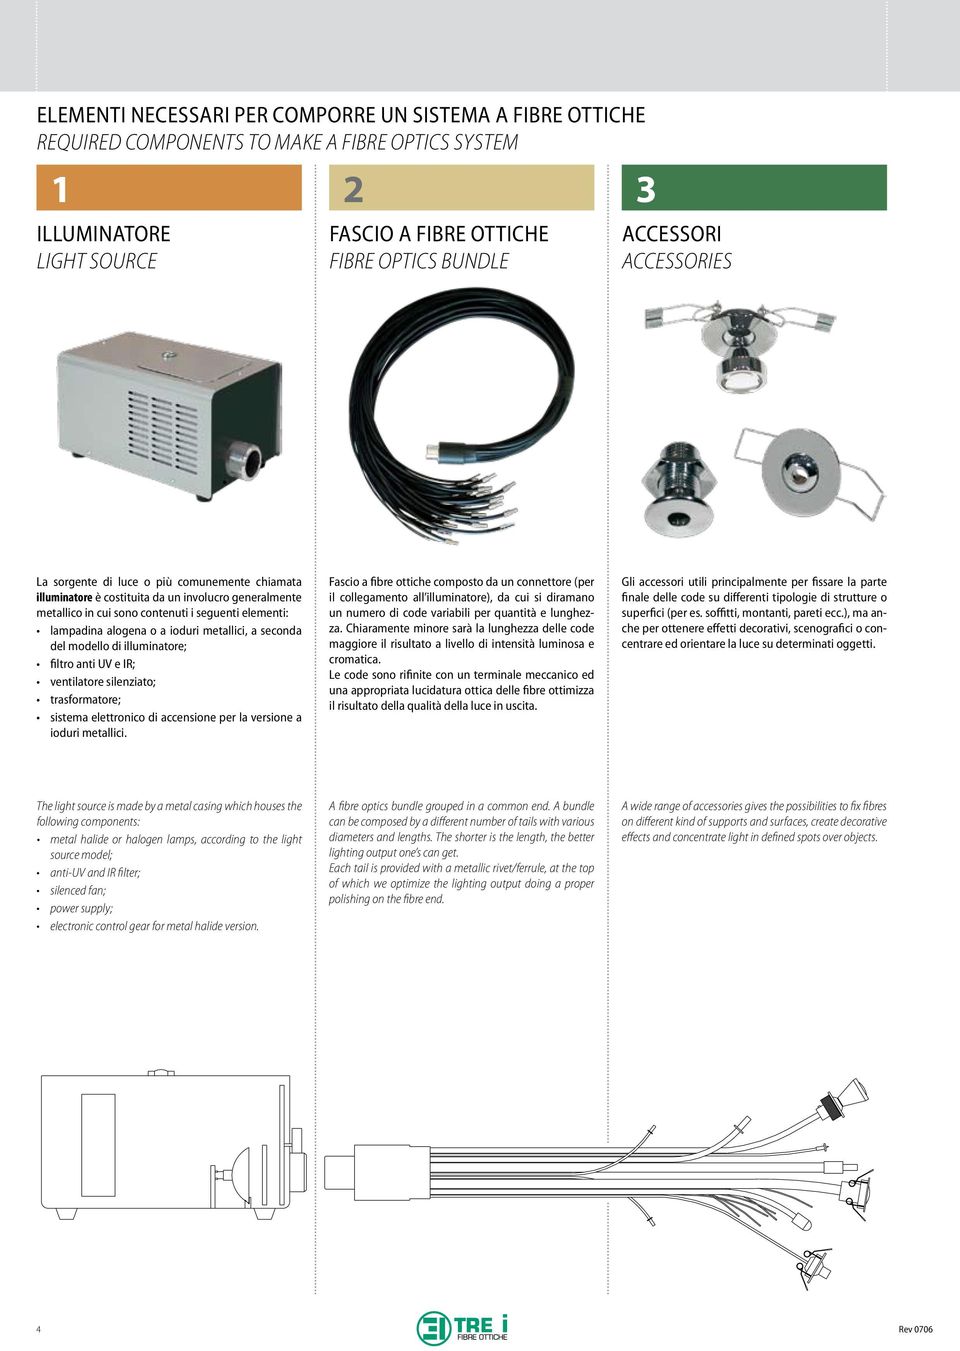 metallici, a seconda del modello di illuminatore; filtro anti UV e IR; ventilatore silenziato; trasformatore; sistema elettronico di accensione per la versione a ioduri metallici.